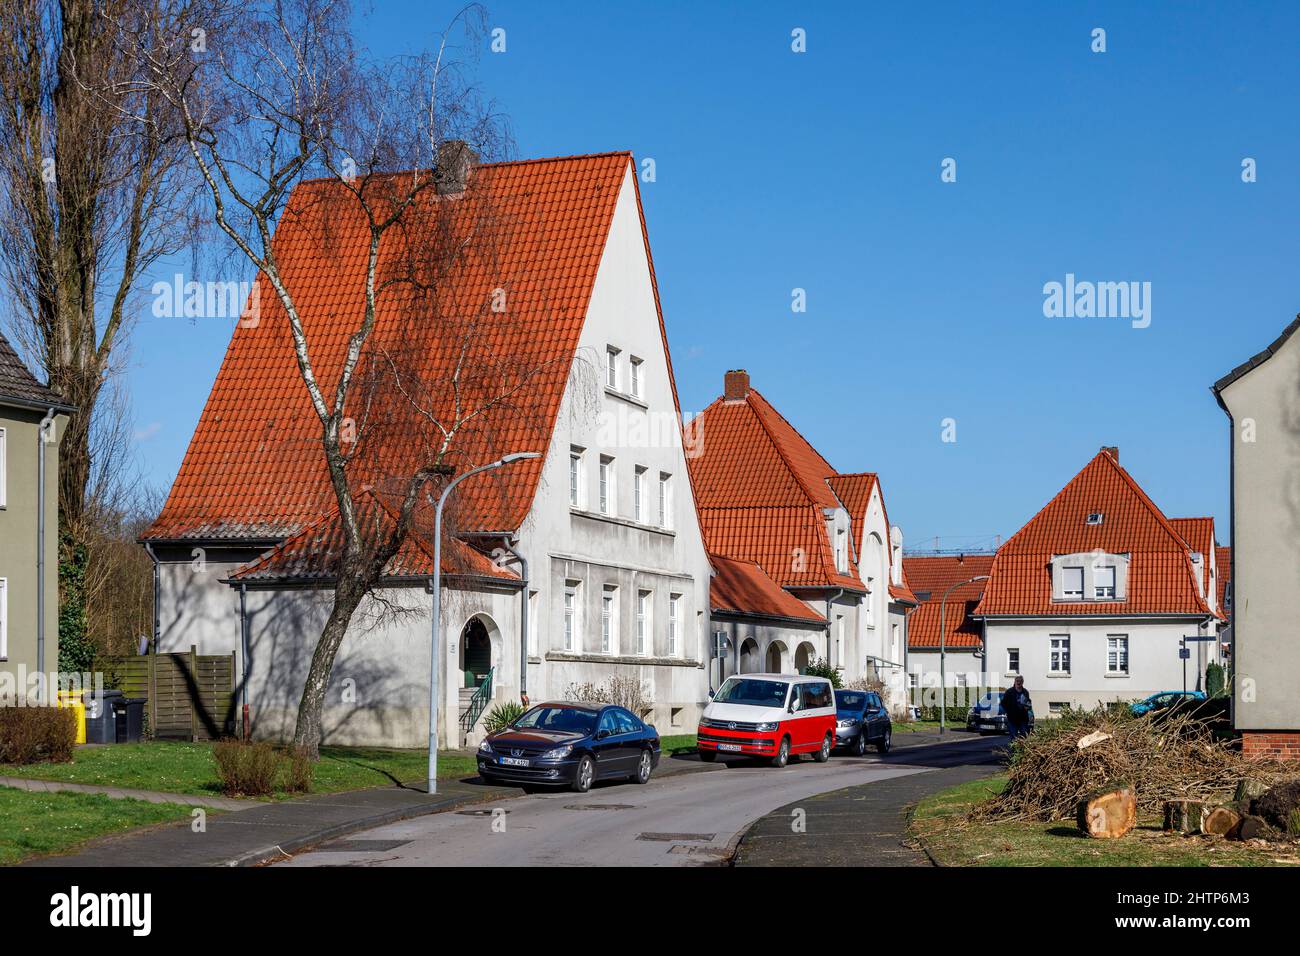 Gartenstadt Welheim settlement in Bottrop, the workers' settlement is part of the Industrial Heritage Route Stock Photo